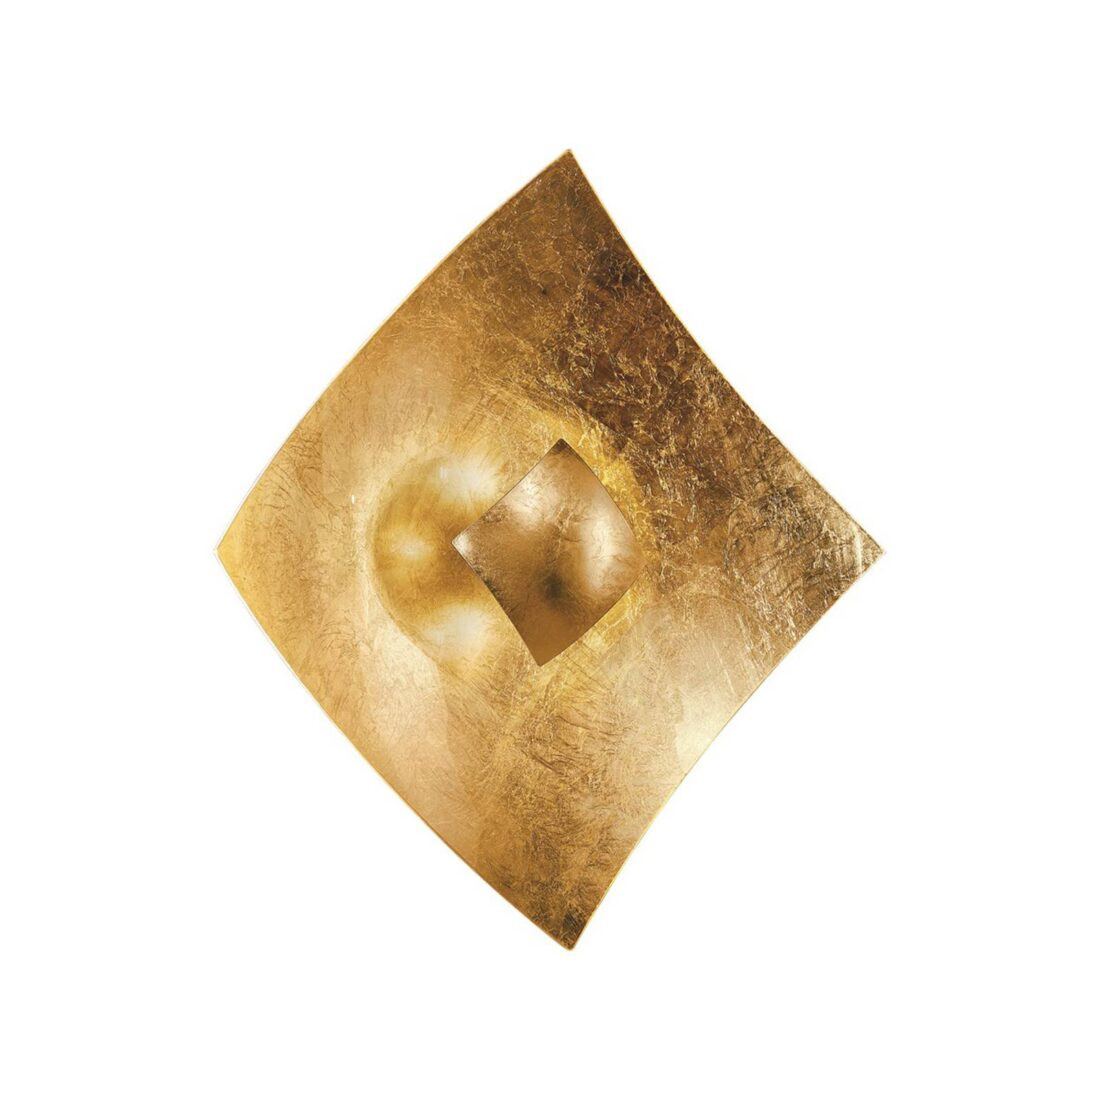 Kögl Nástěnné svítidlo Quadrangolo s plátkovým zlatem